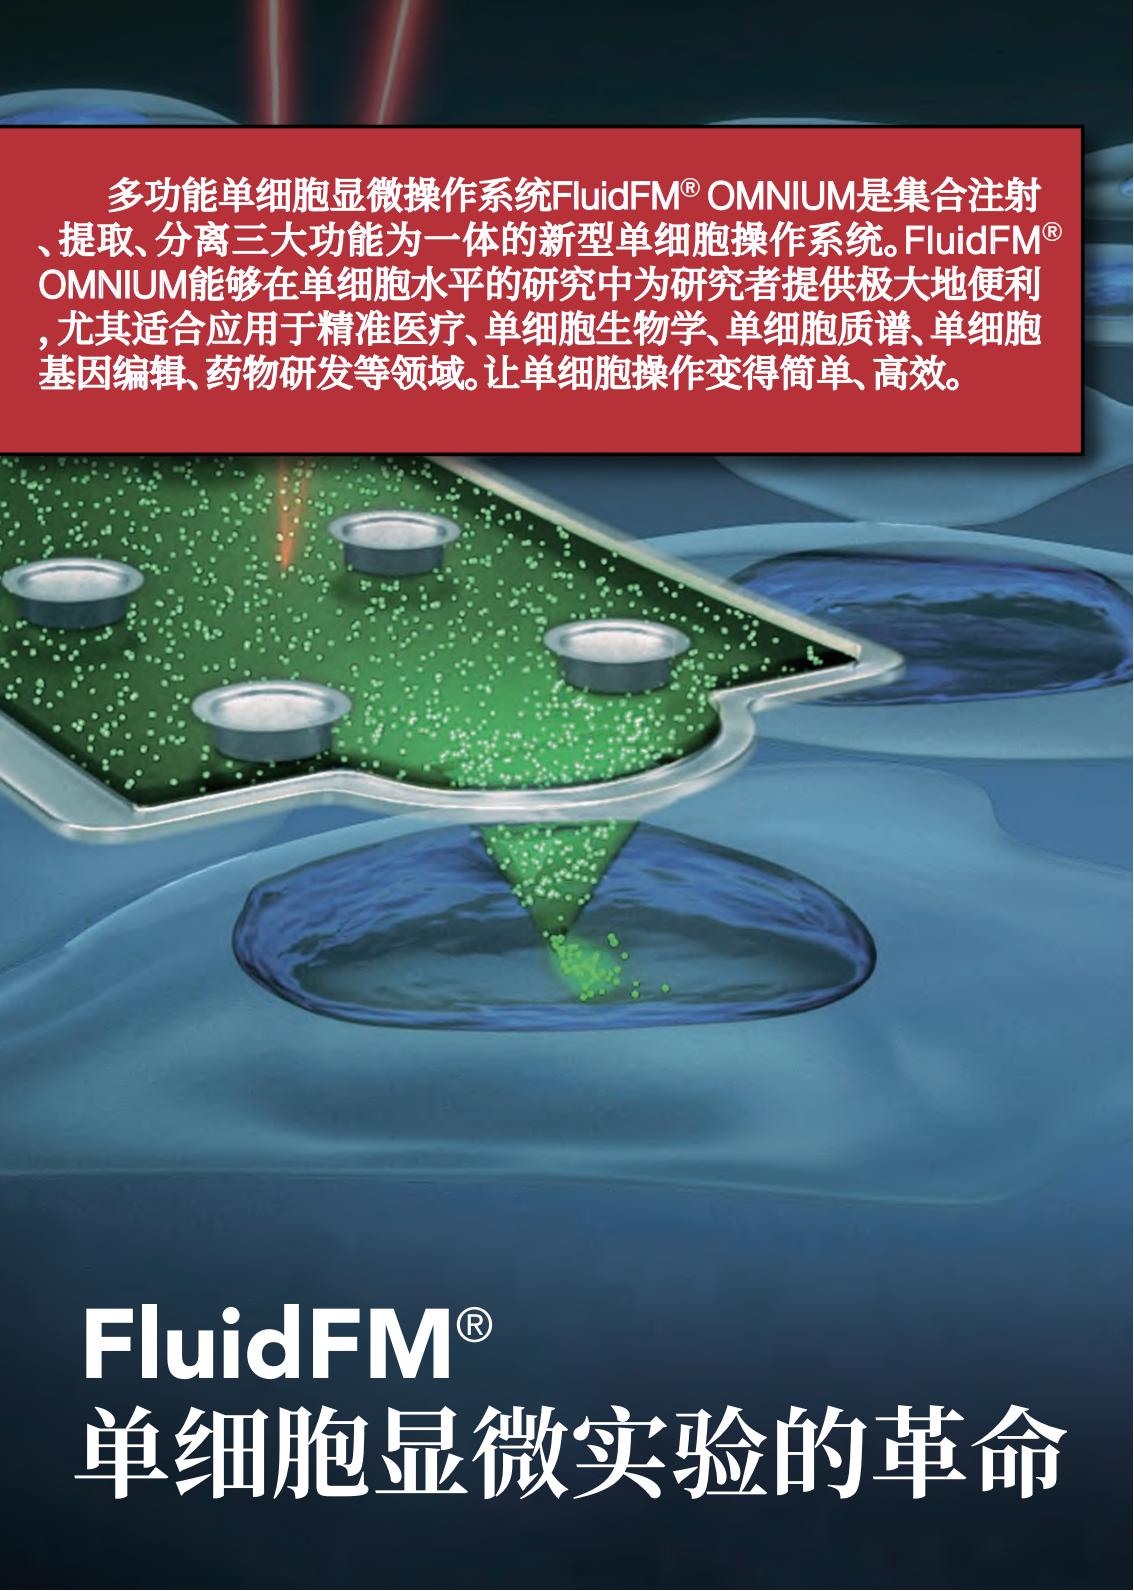 多功能单细胞显微操作系统FluidFM_OMNIUM(图2)